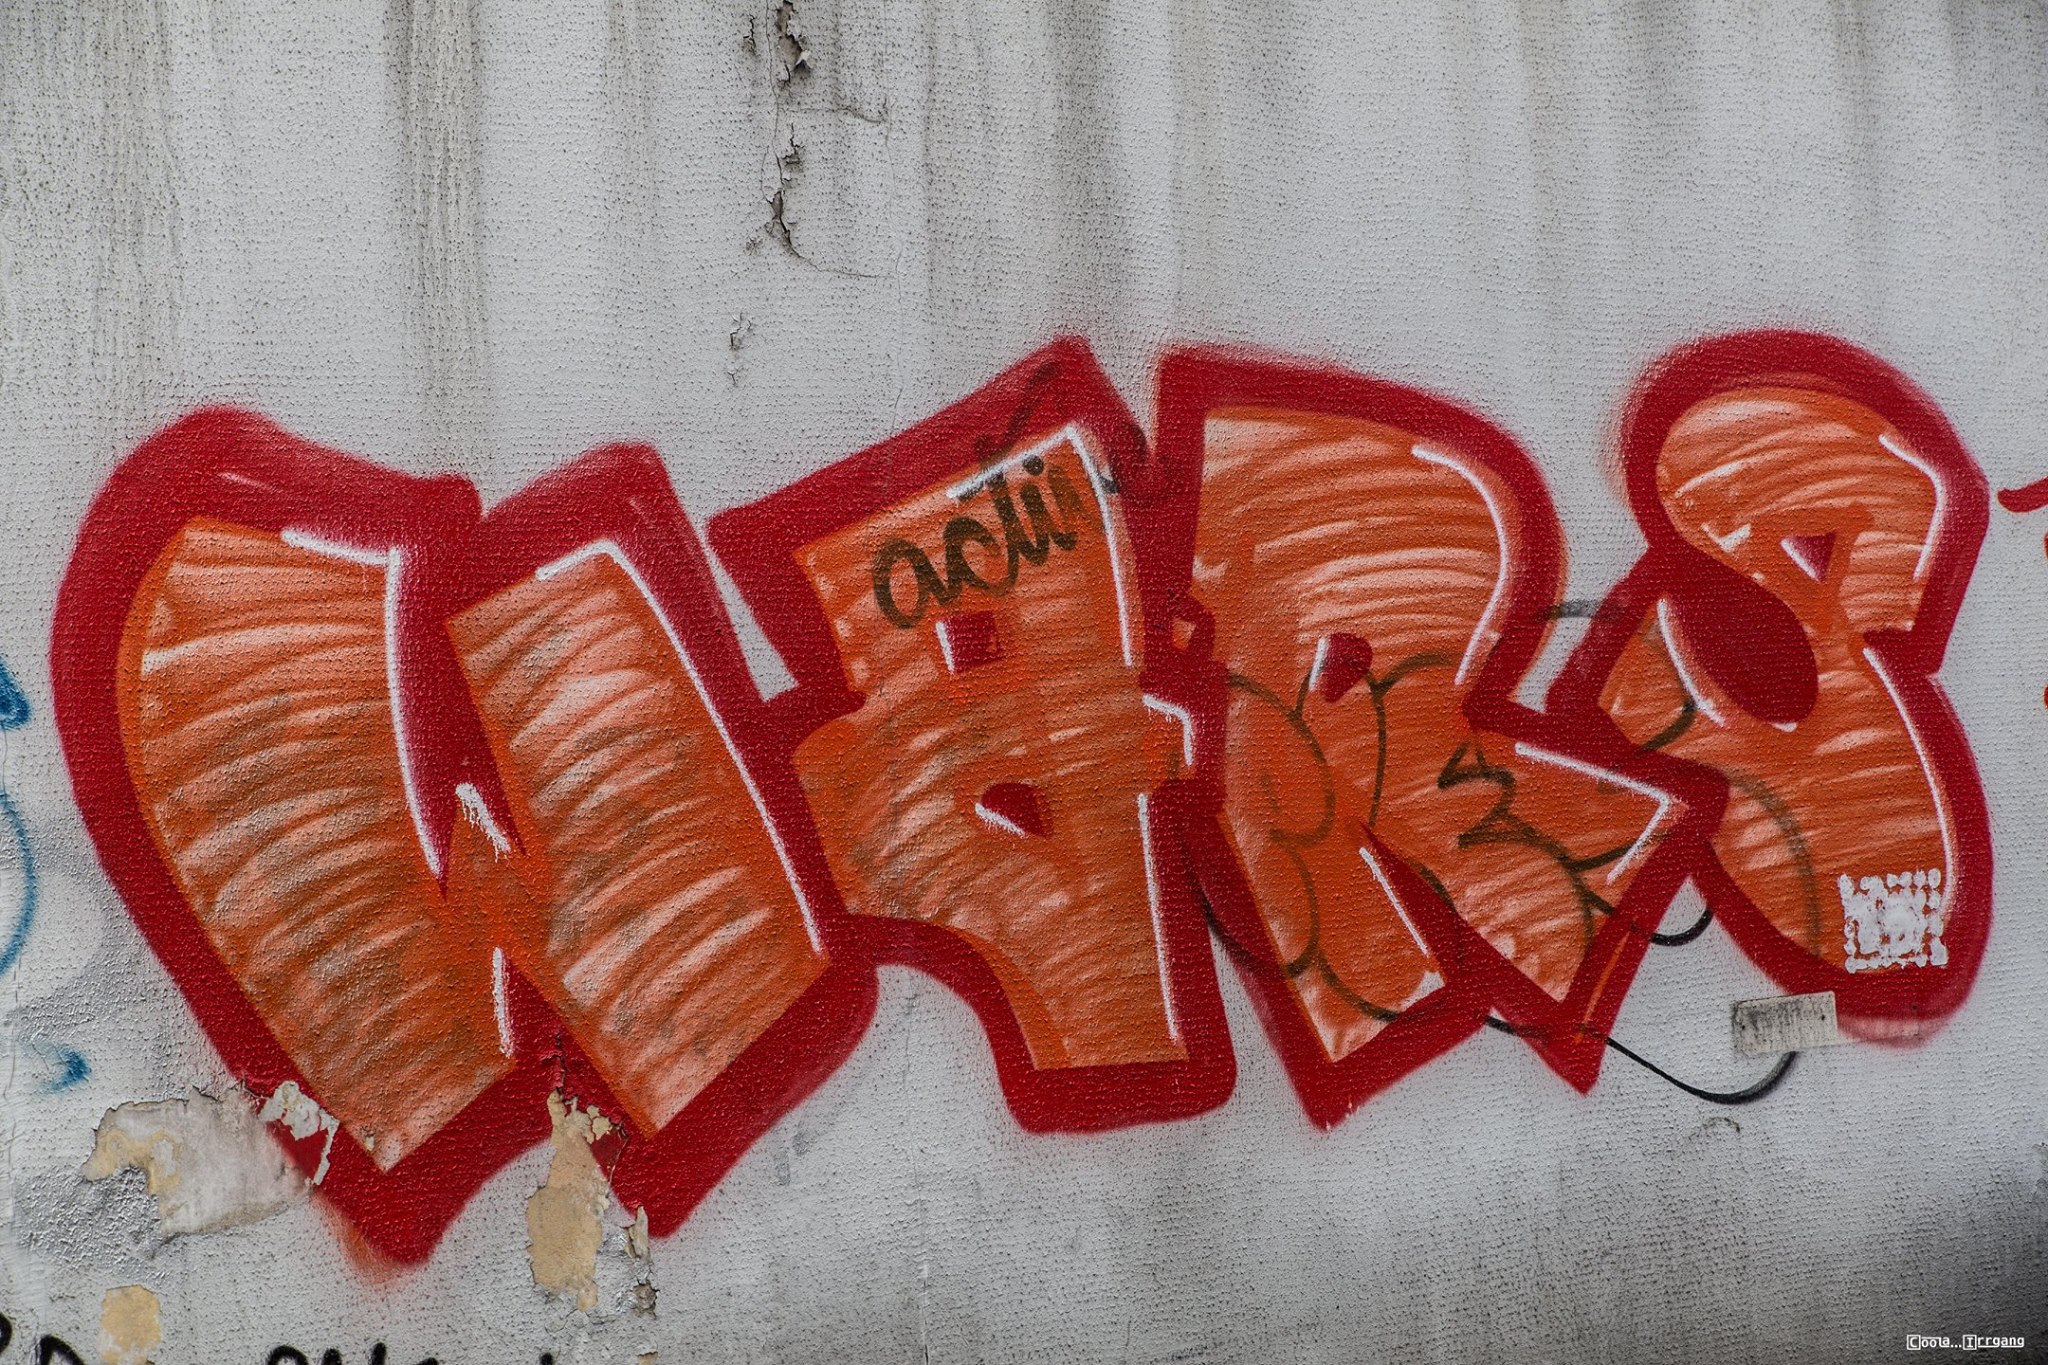 Graffiti Schraffi/Schraffo